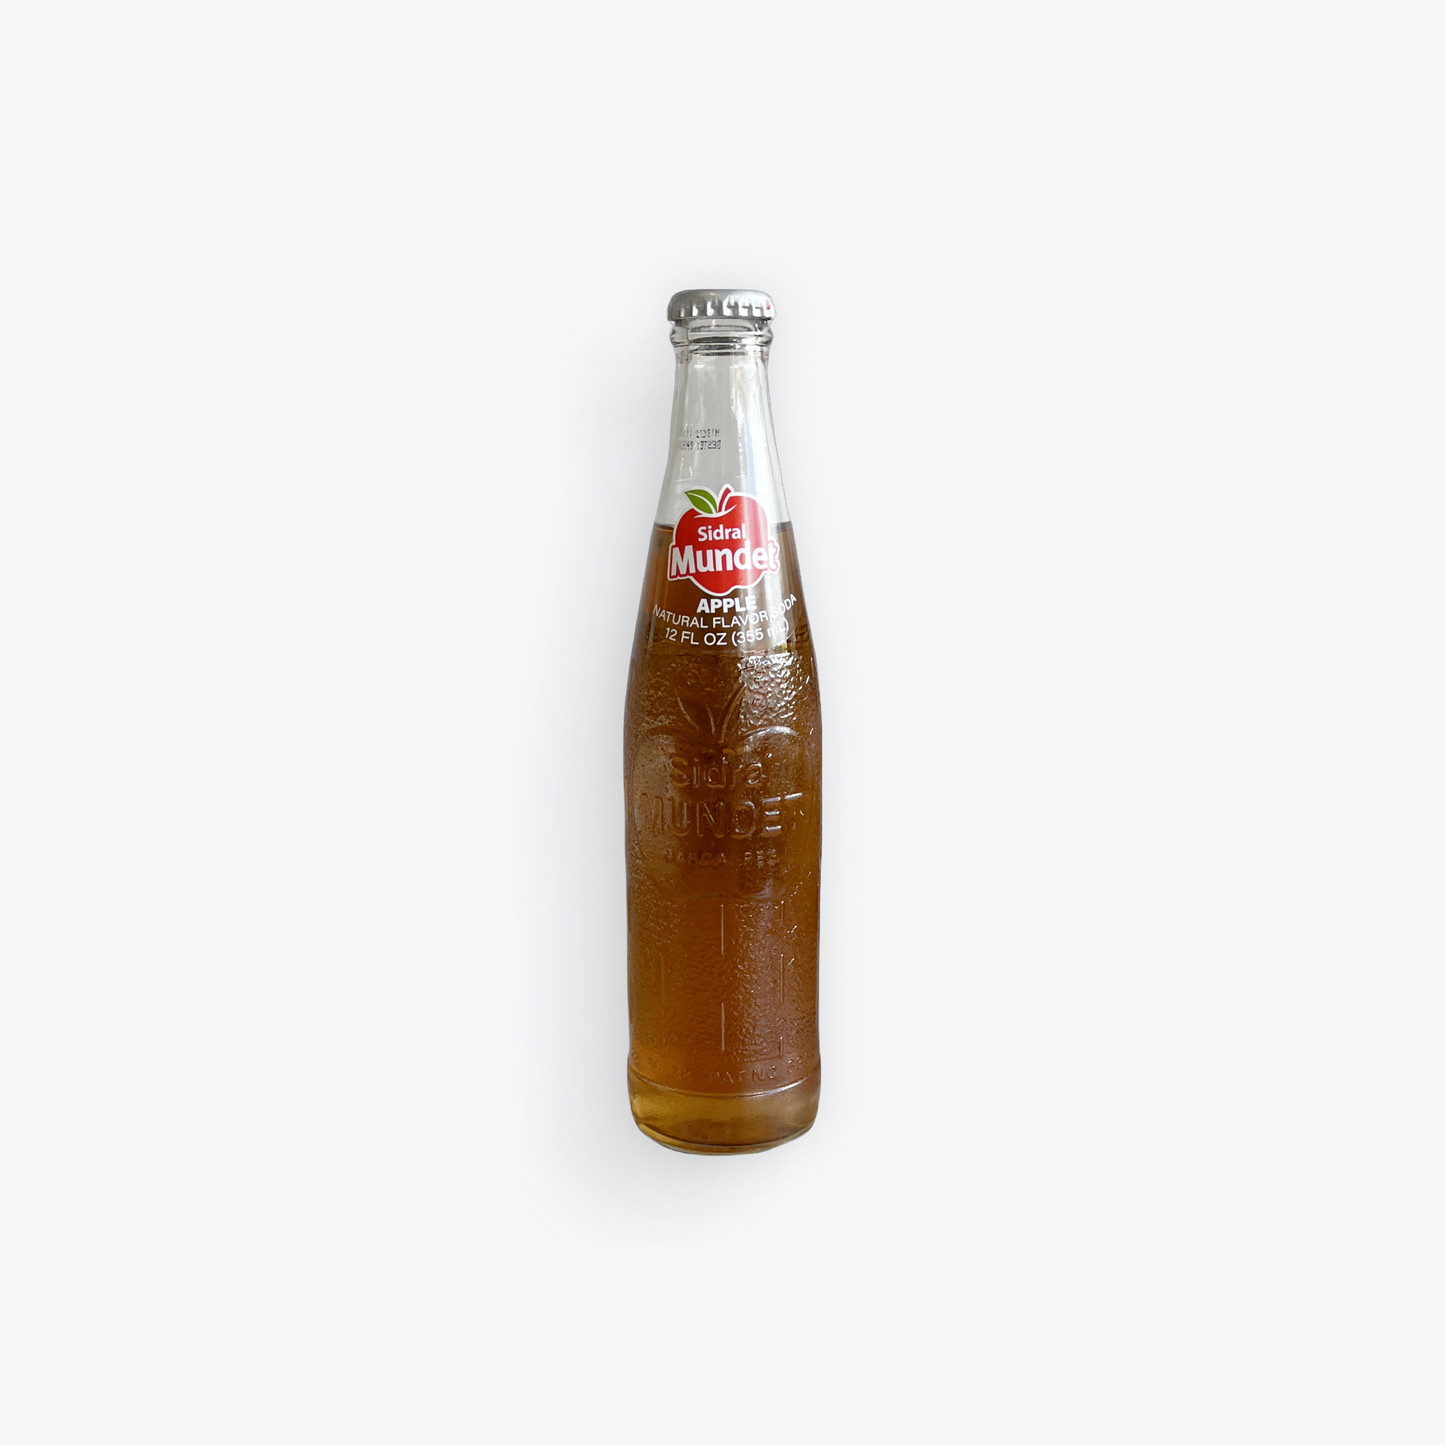 Sidral- Mundet Glass Bottle, 12 oz